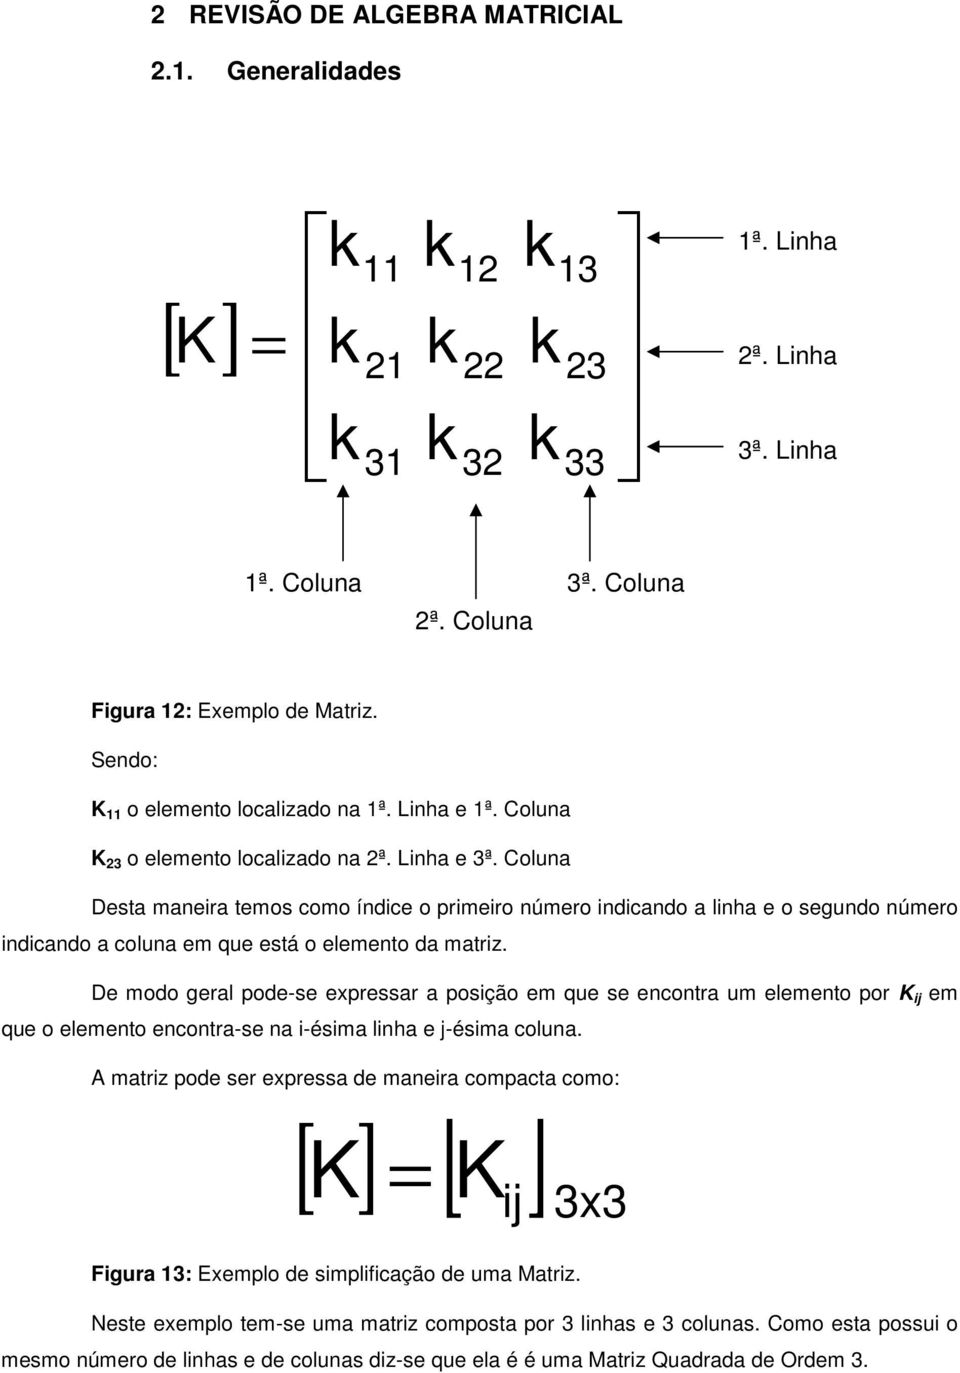 De modo geral pode-se epressar a posição em que se encontra um elemento por K ij em que o elemento encontra-se na i-ésima linha e j-ésima coluna.